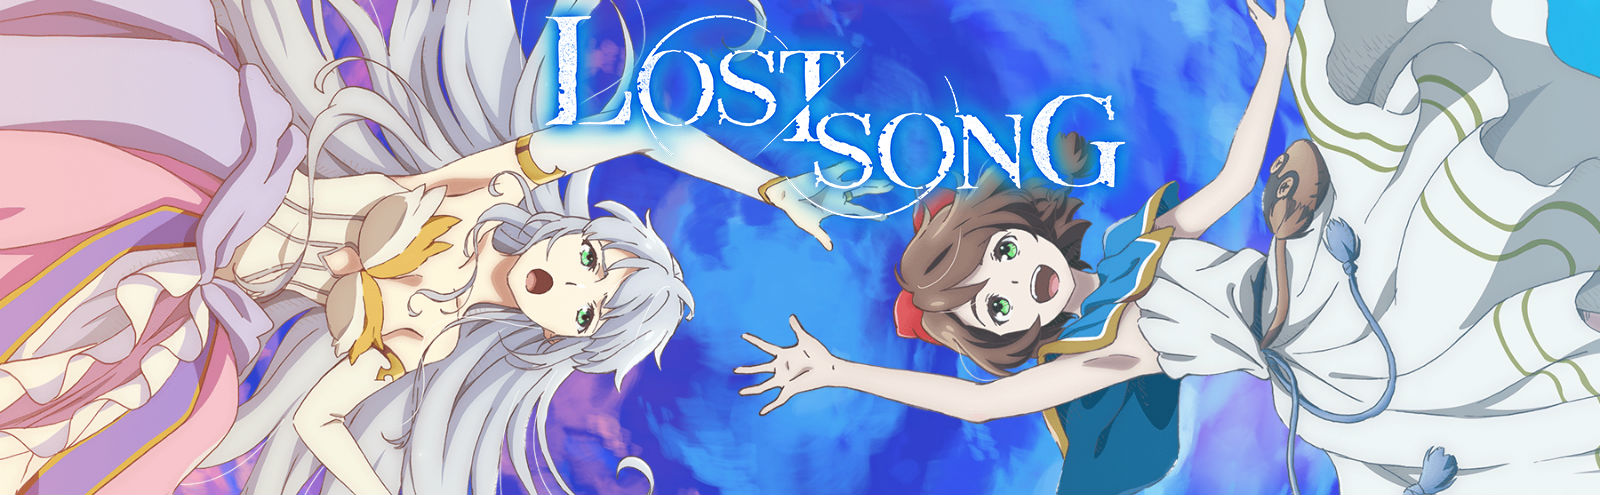 روابط جديدة احدث انتاجات نيتفلكس للانمي الحلقة 1 من Lost Song